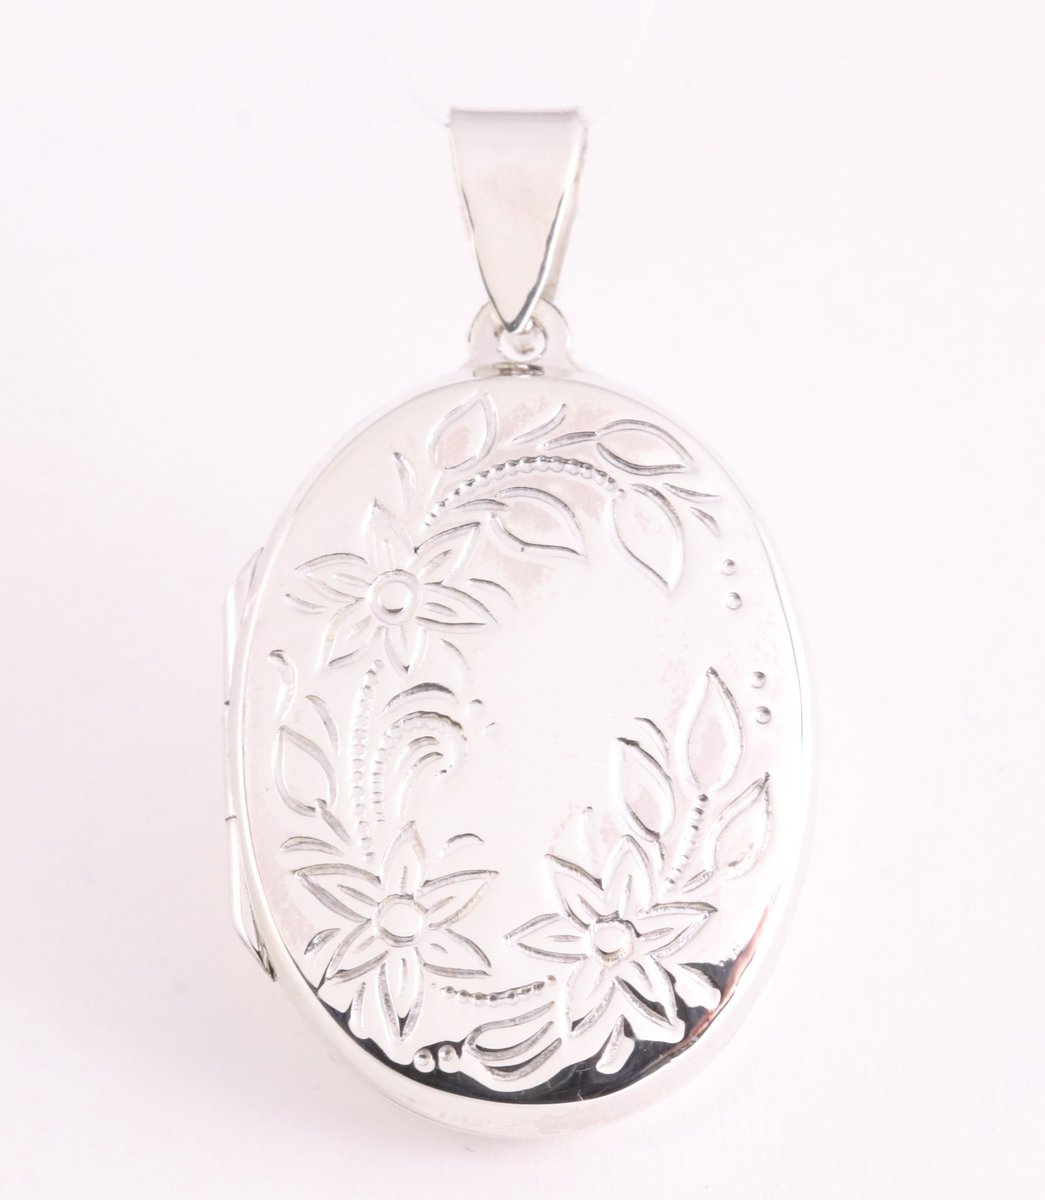 Ovaal hoogglans zilveren medaillon met bloemengravering